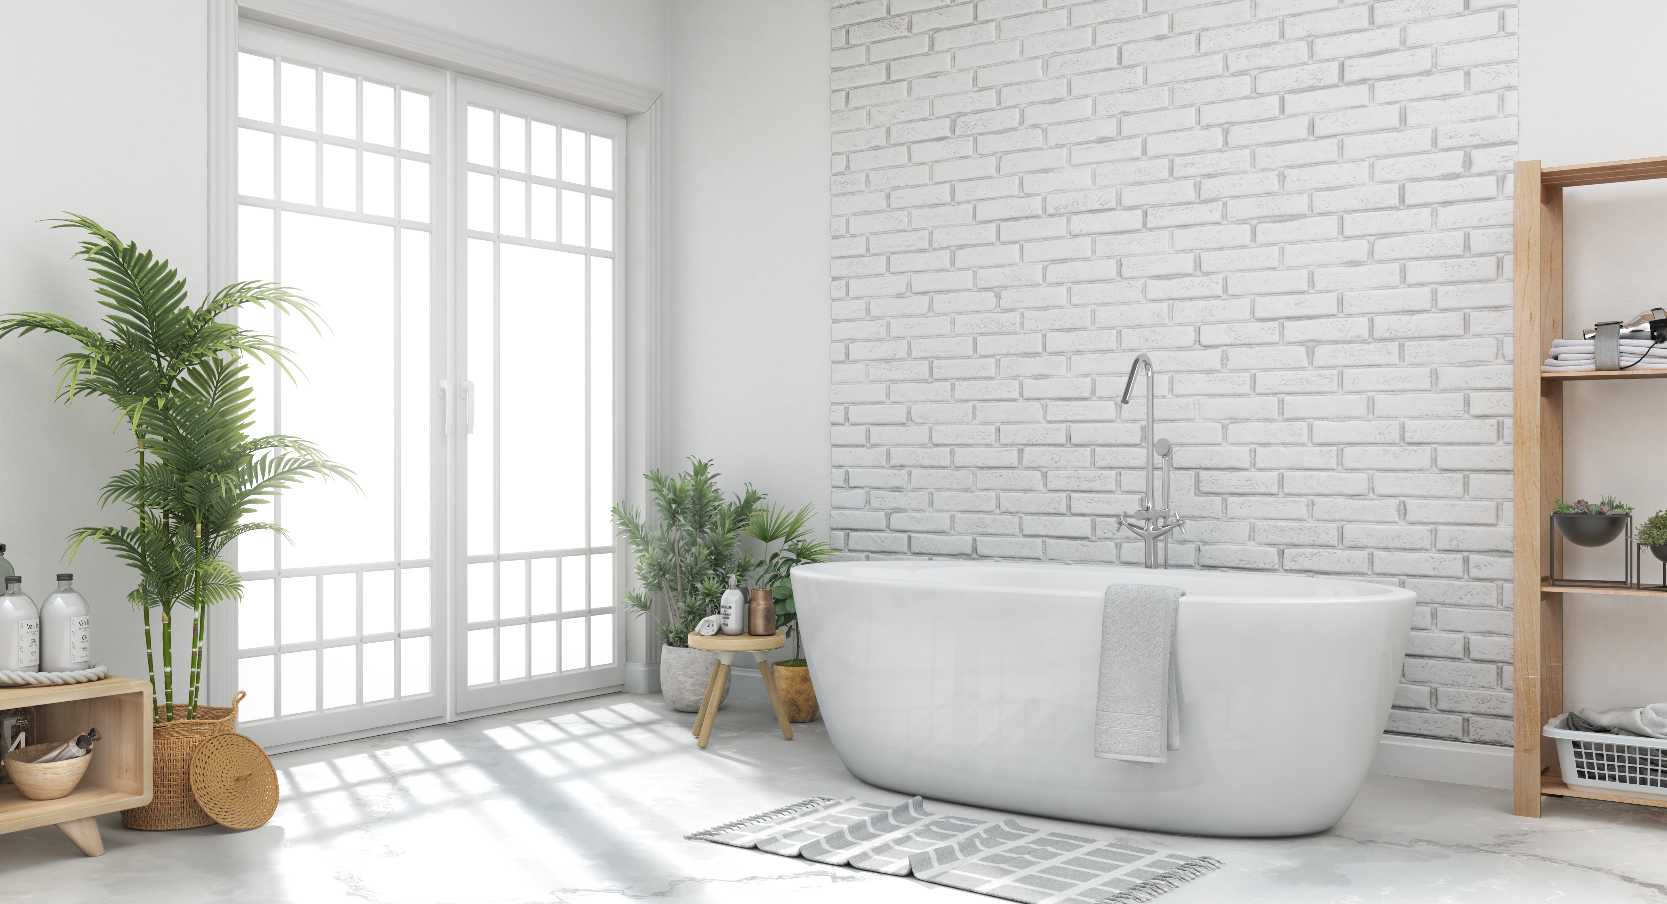 Badkamer schilderen? Welke verf gebruik ik?